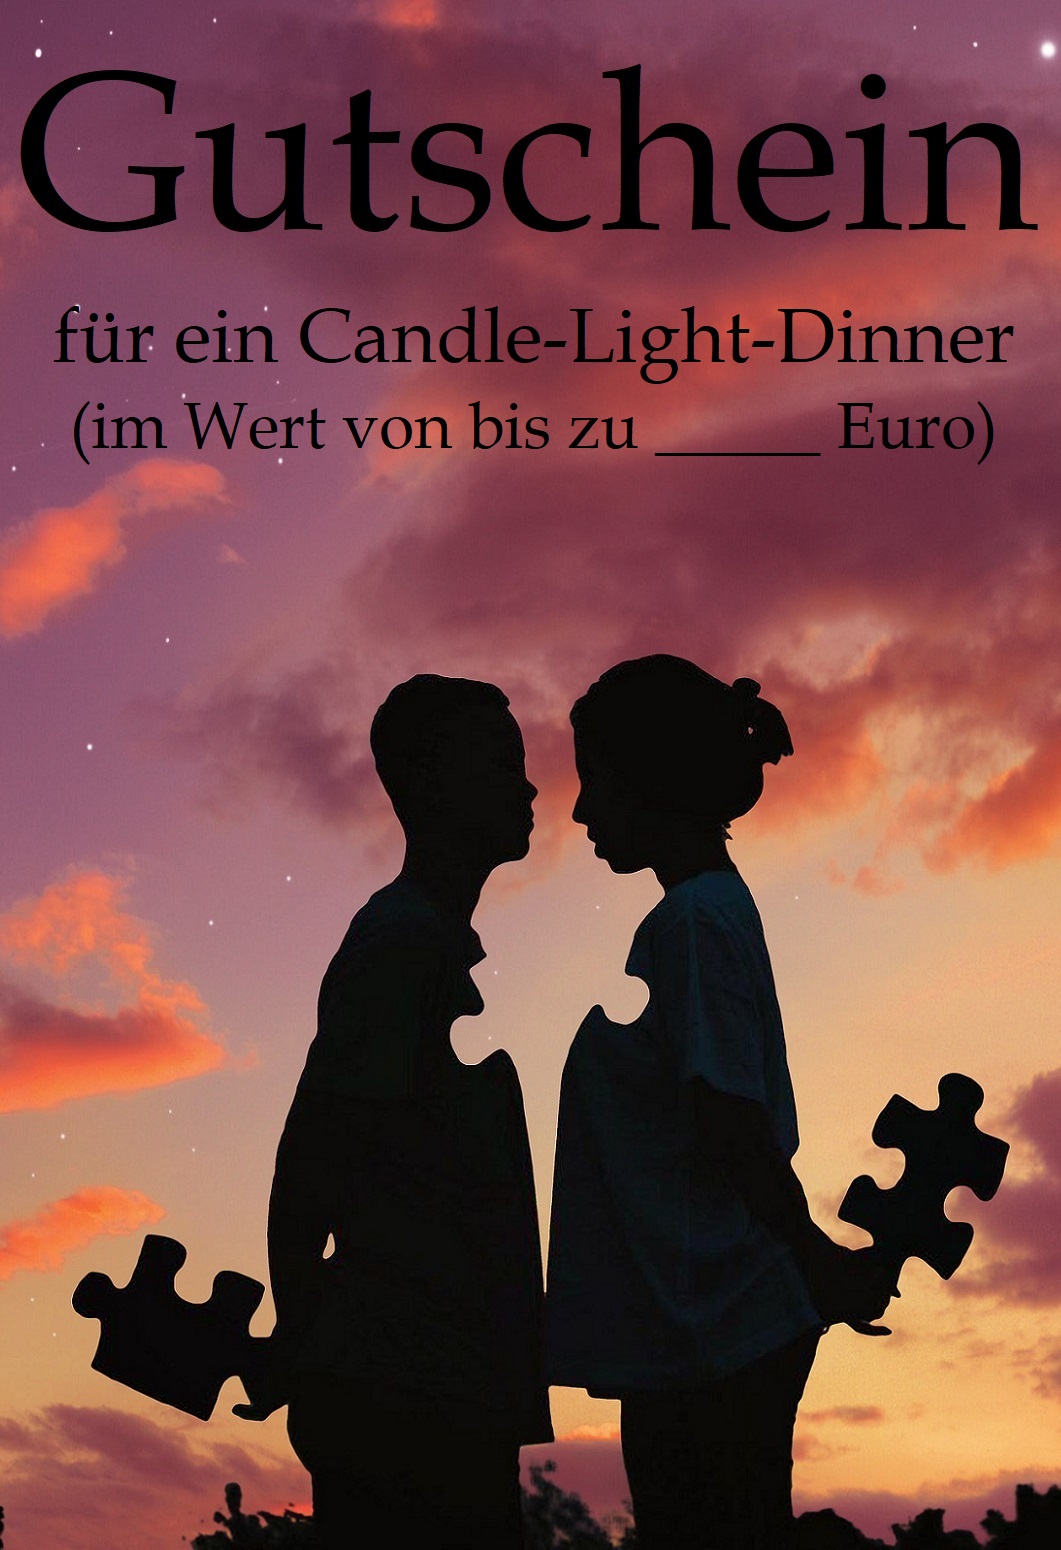 Gutschein-Vorlage Candle-Light-Dinner